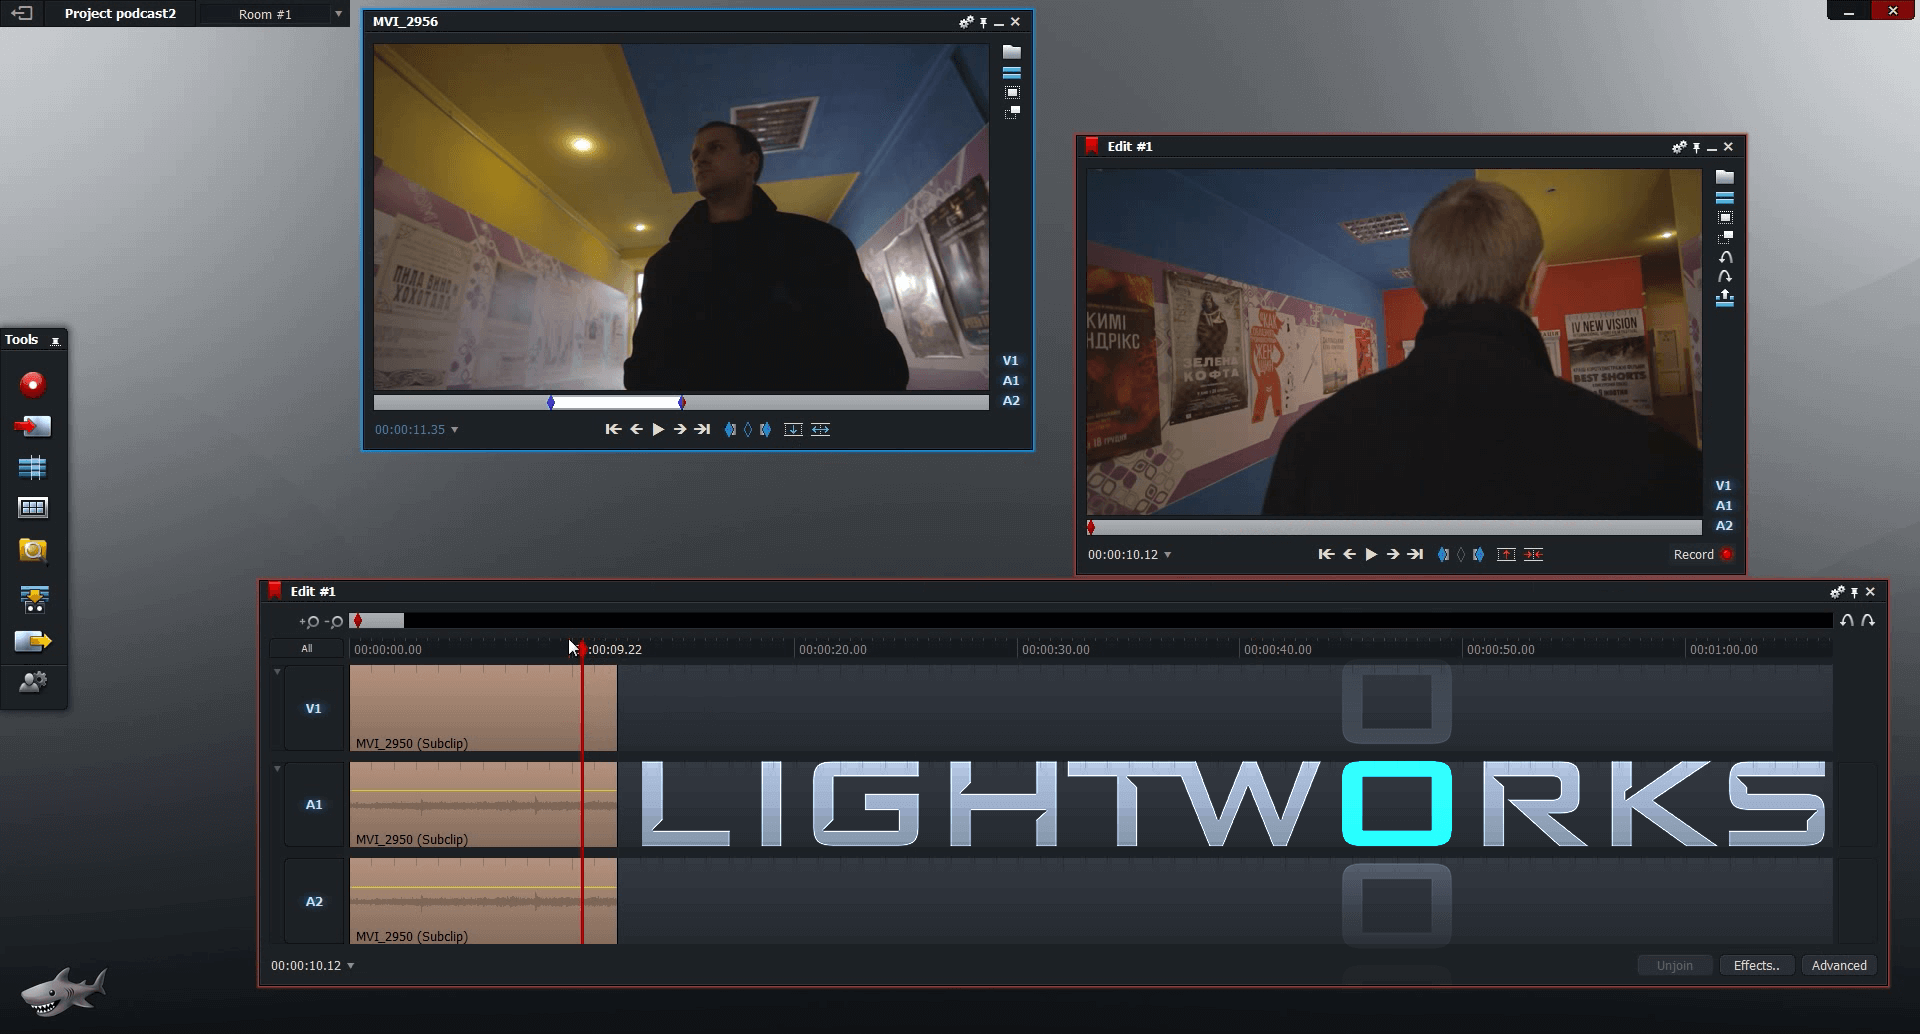 lightworks v12 tutorial review r - обзор фильма